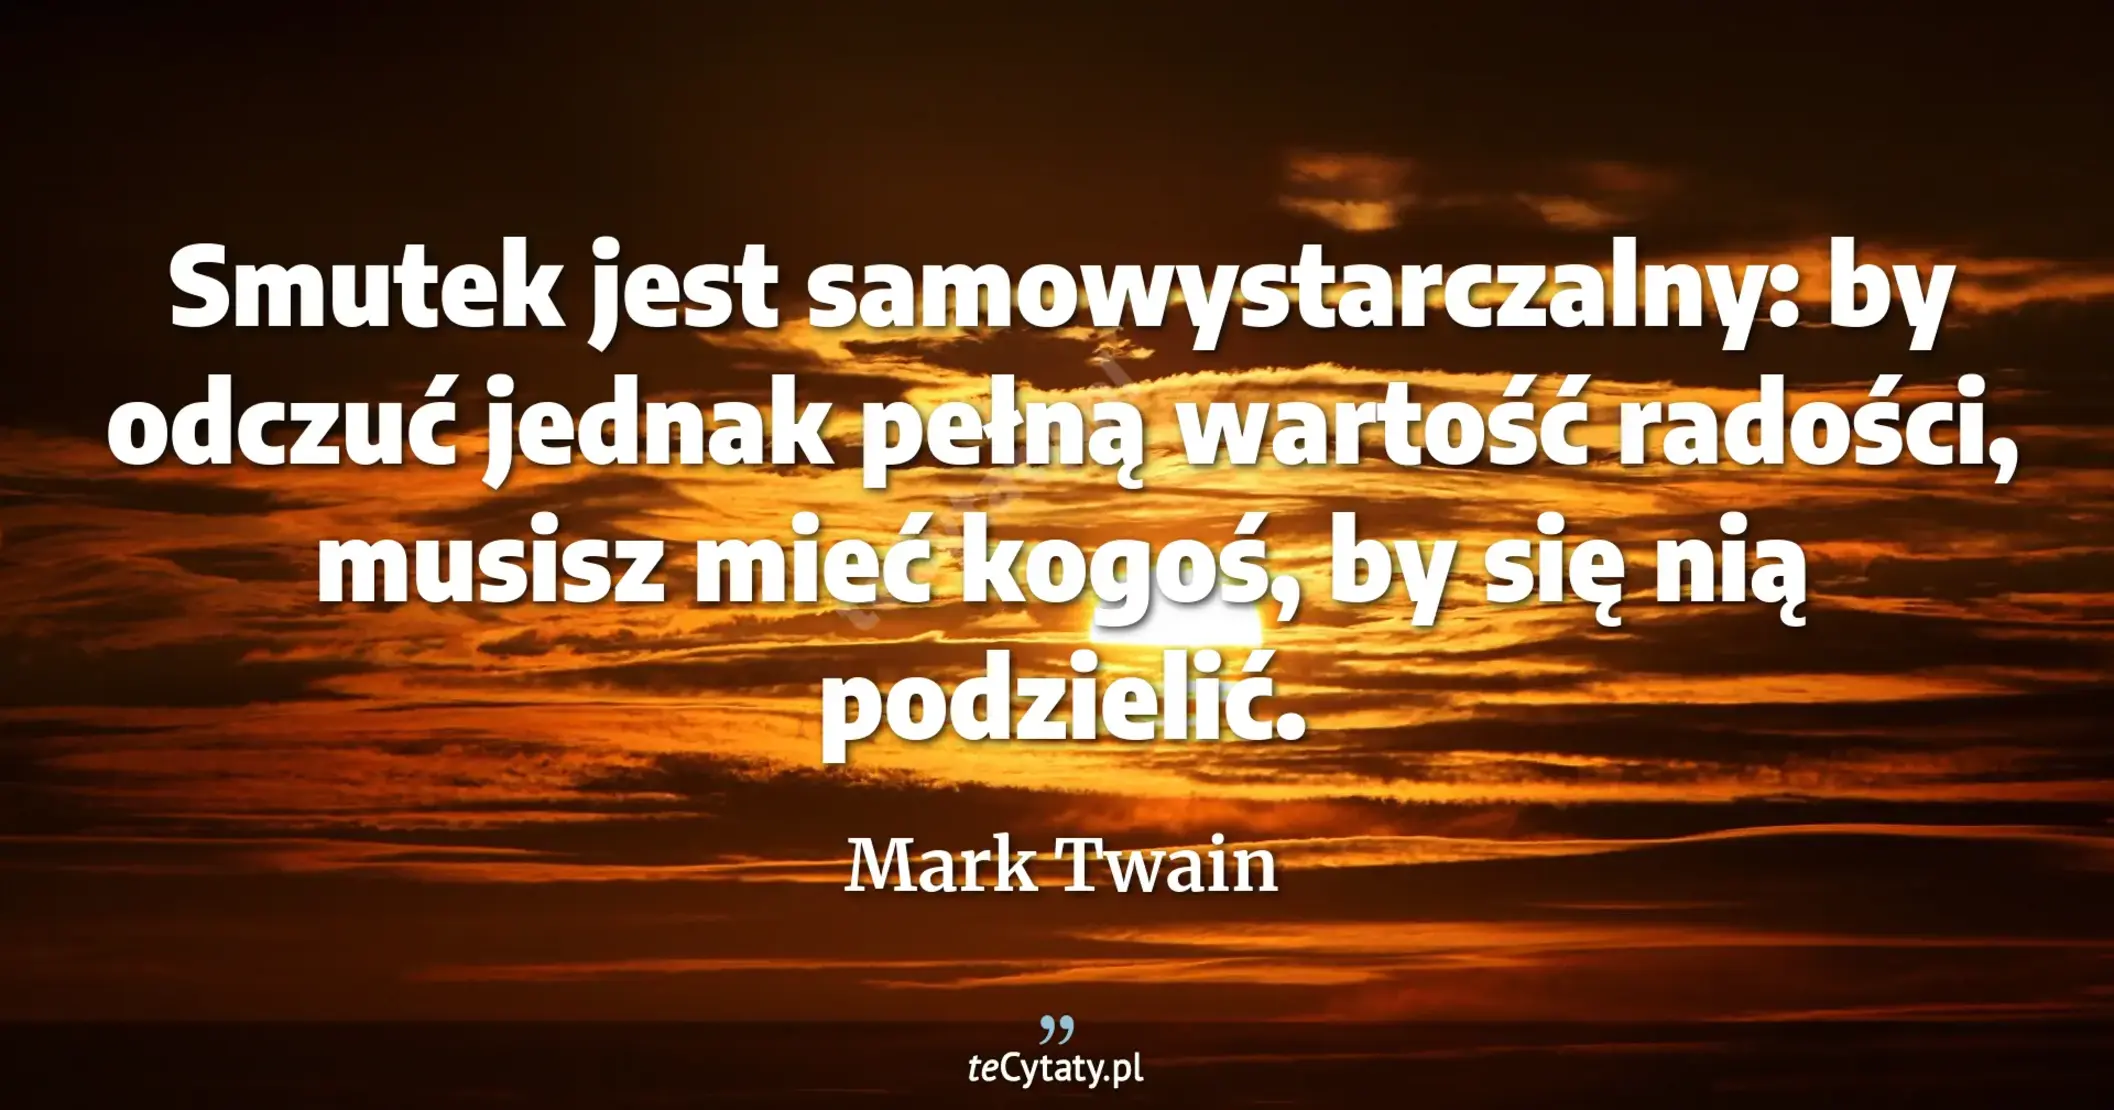 Smutek jest samowystarczalny: by odczuć jednak pełną wartość radości, musisz mieć kogoś, by się nią podzielić. - Mark Twain